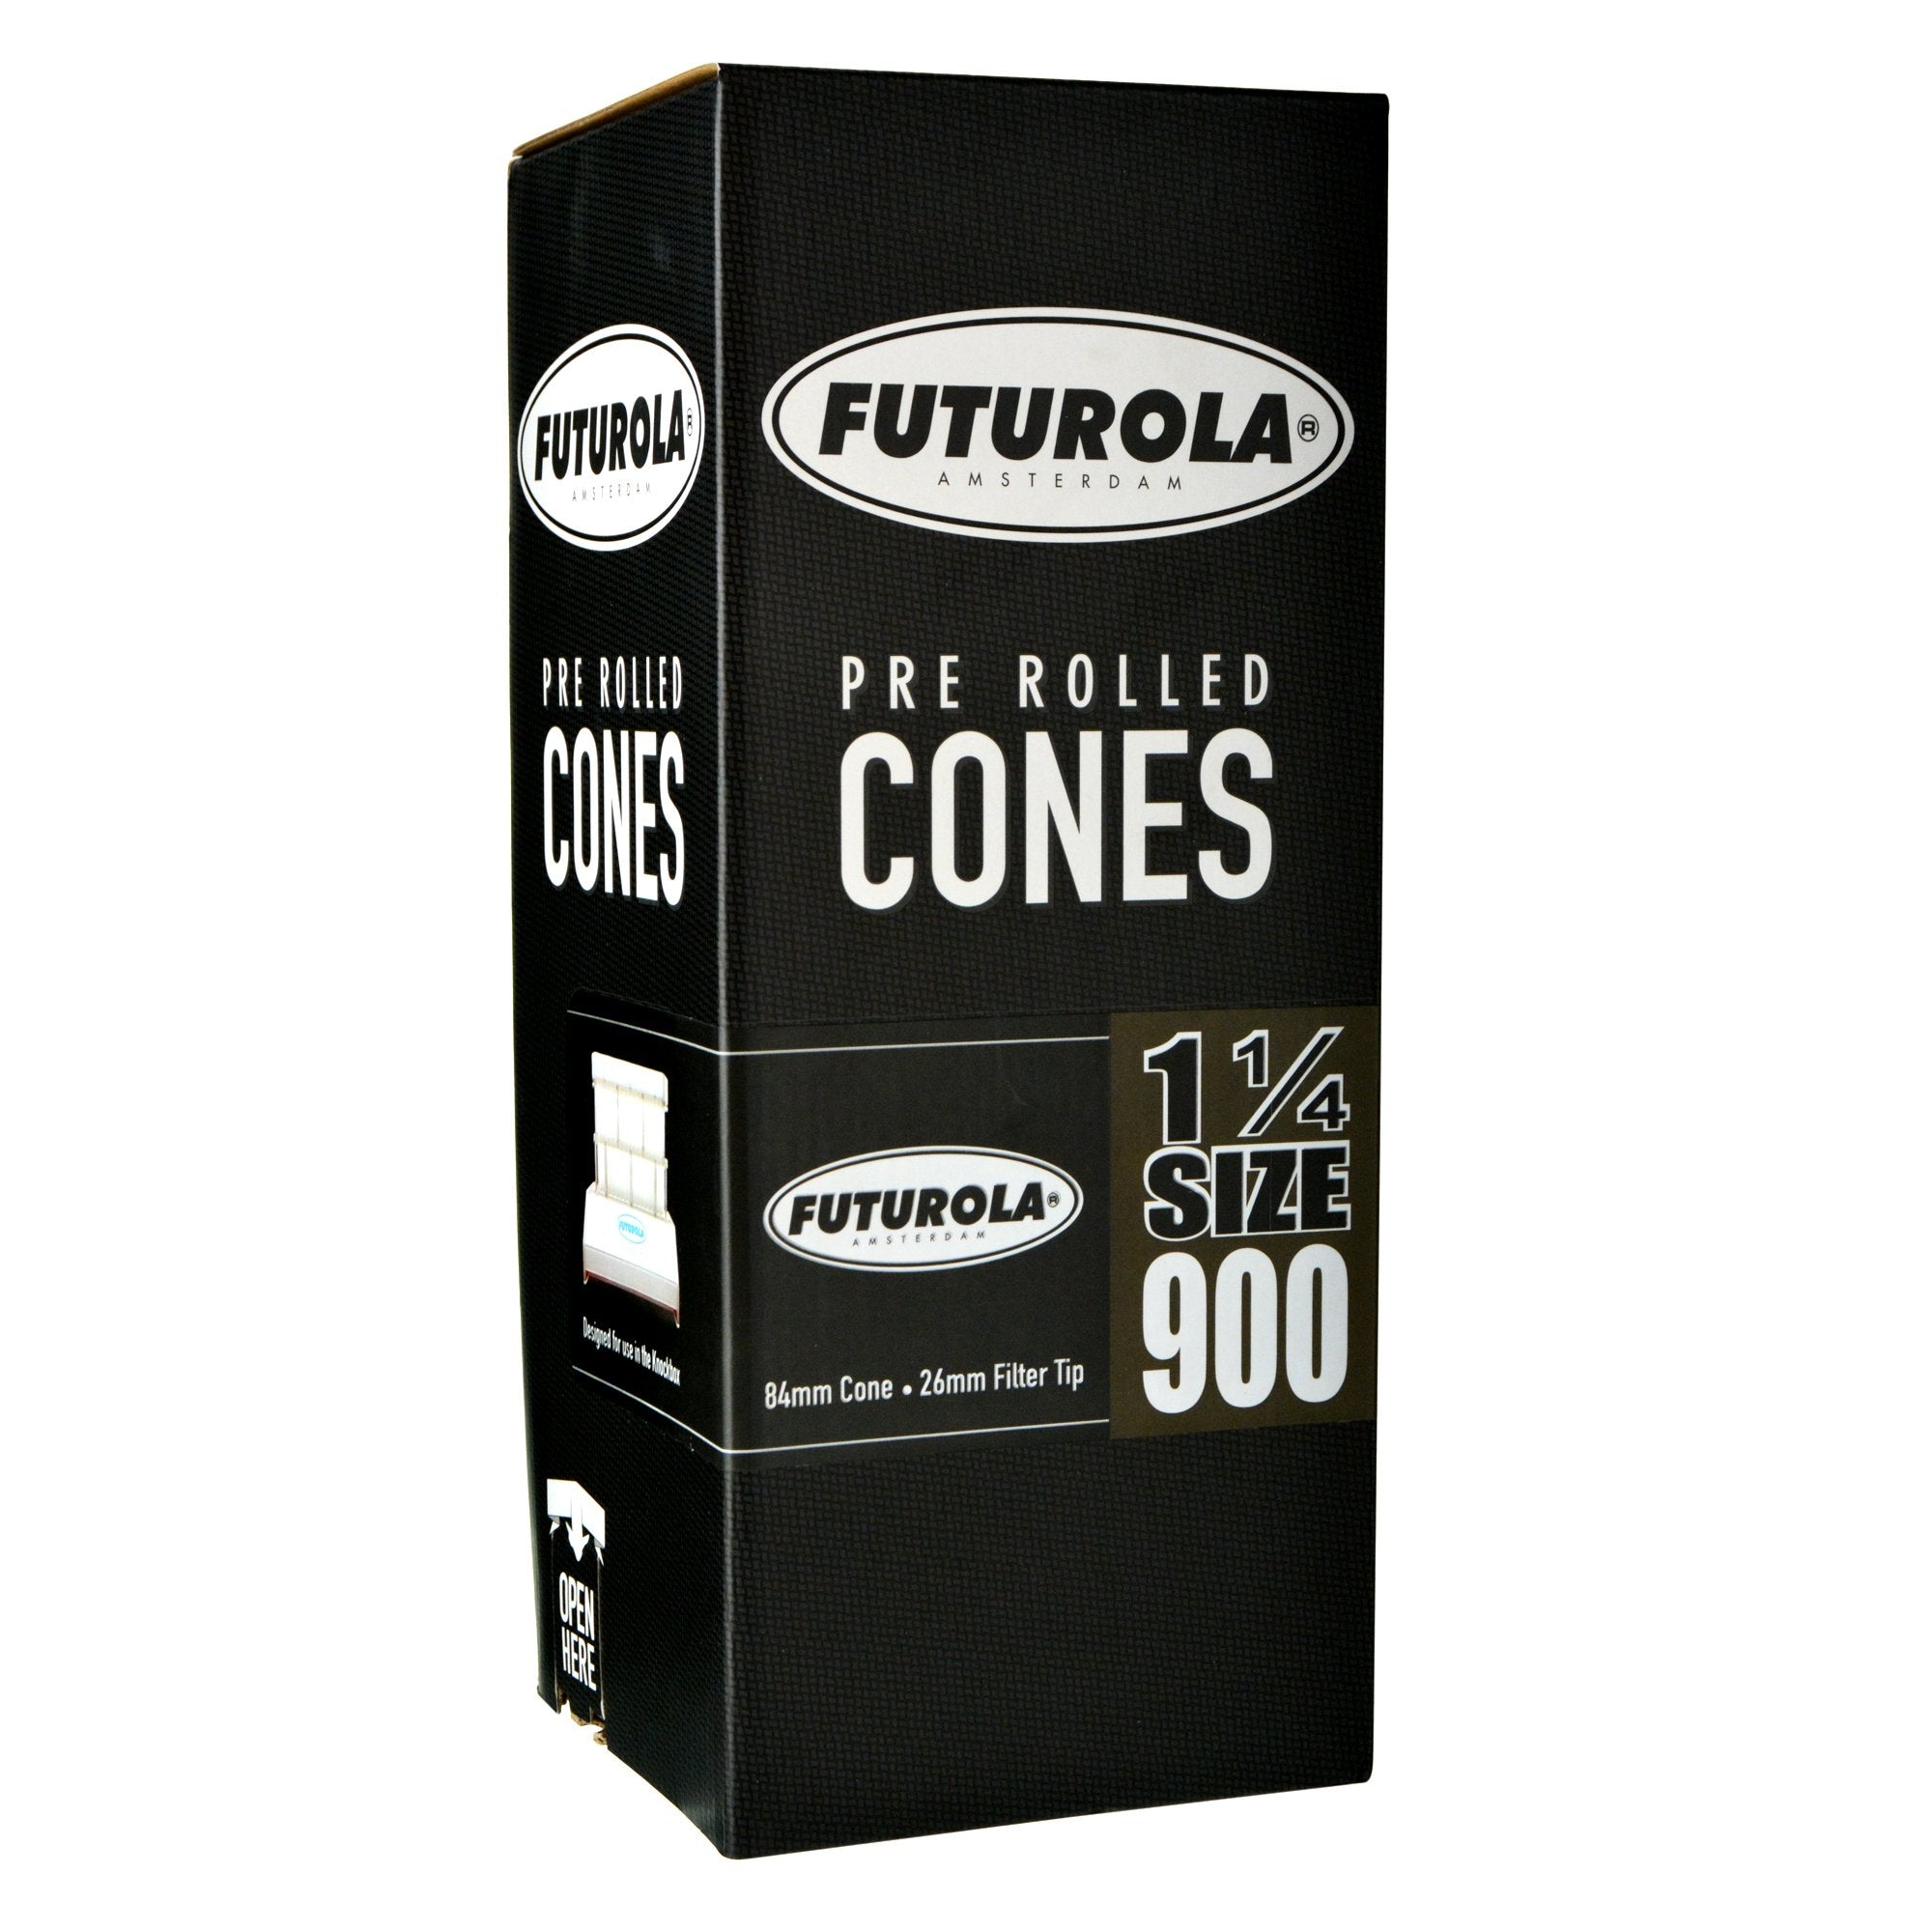 FUTUROLA | 1 1/4 Size Pre-Rolled Cones | 84mm - Classic White Paper - 900 Count - 1